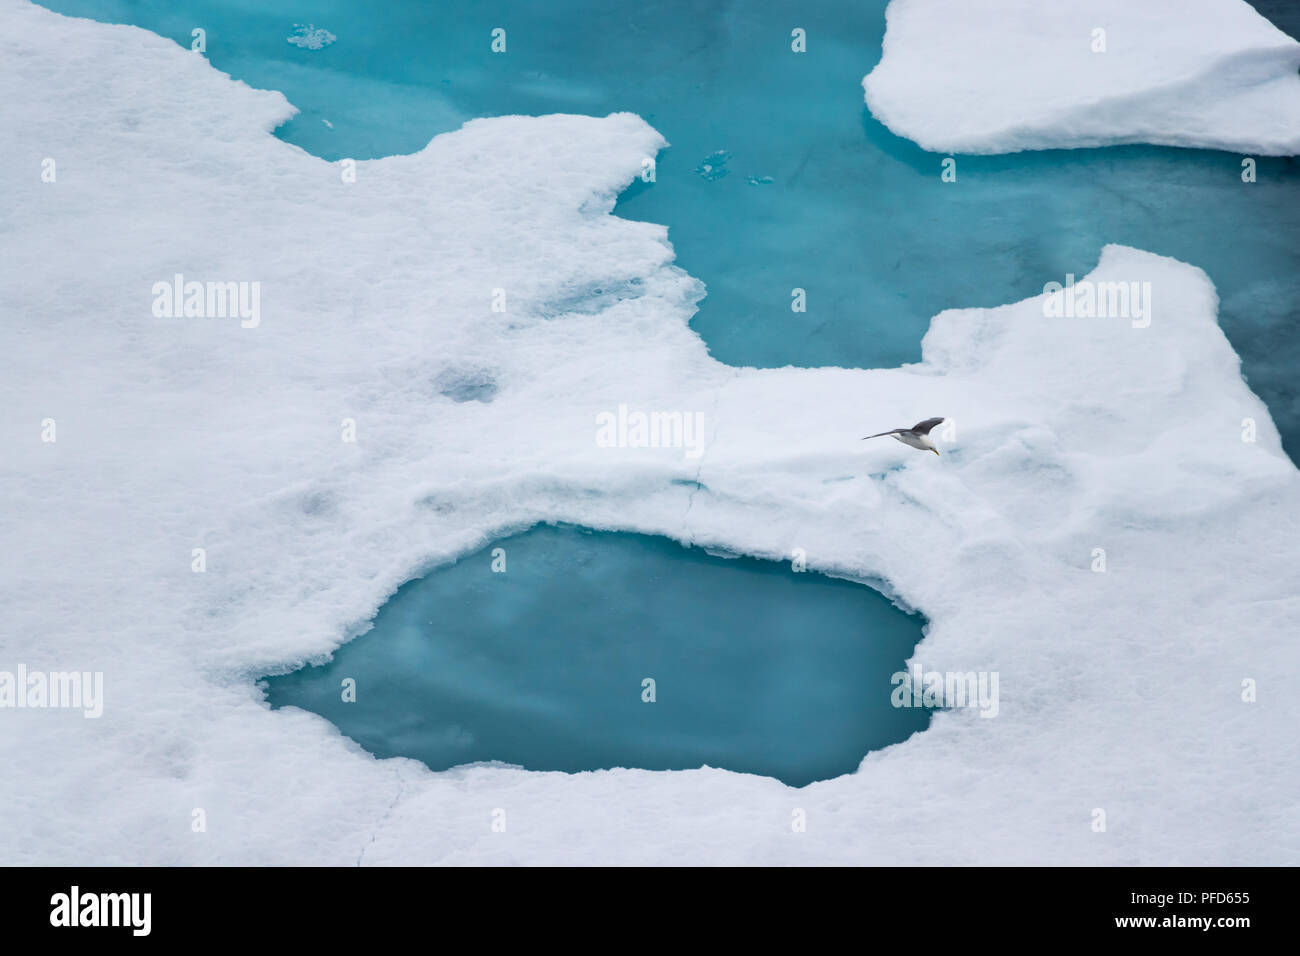 La mouette tridactyle (Rissa tridactyla), volant sur la glace dans l'océan Arctique, à 82 degrés de latitude nord et 022 degrés est. Banque D'Images